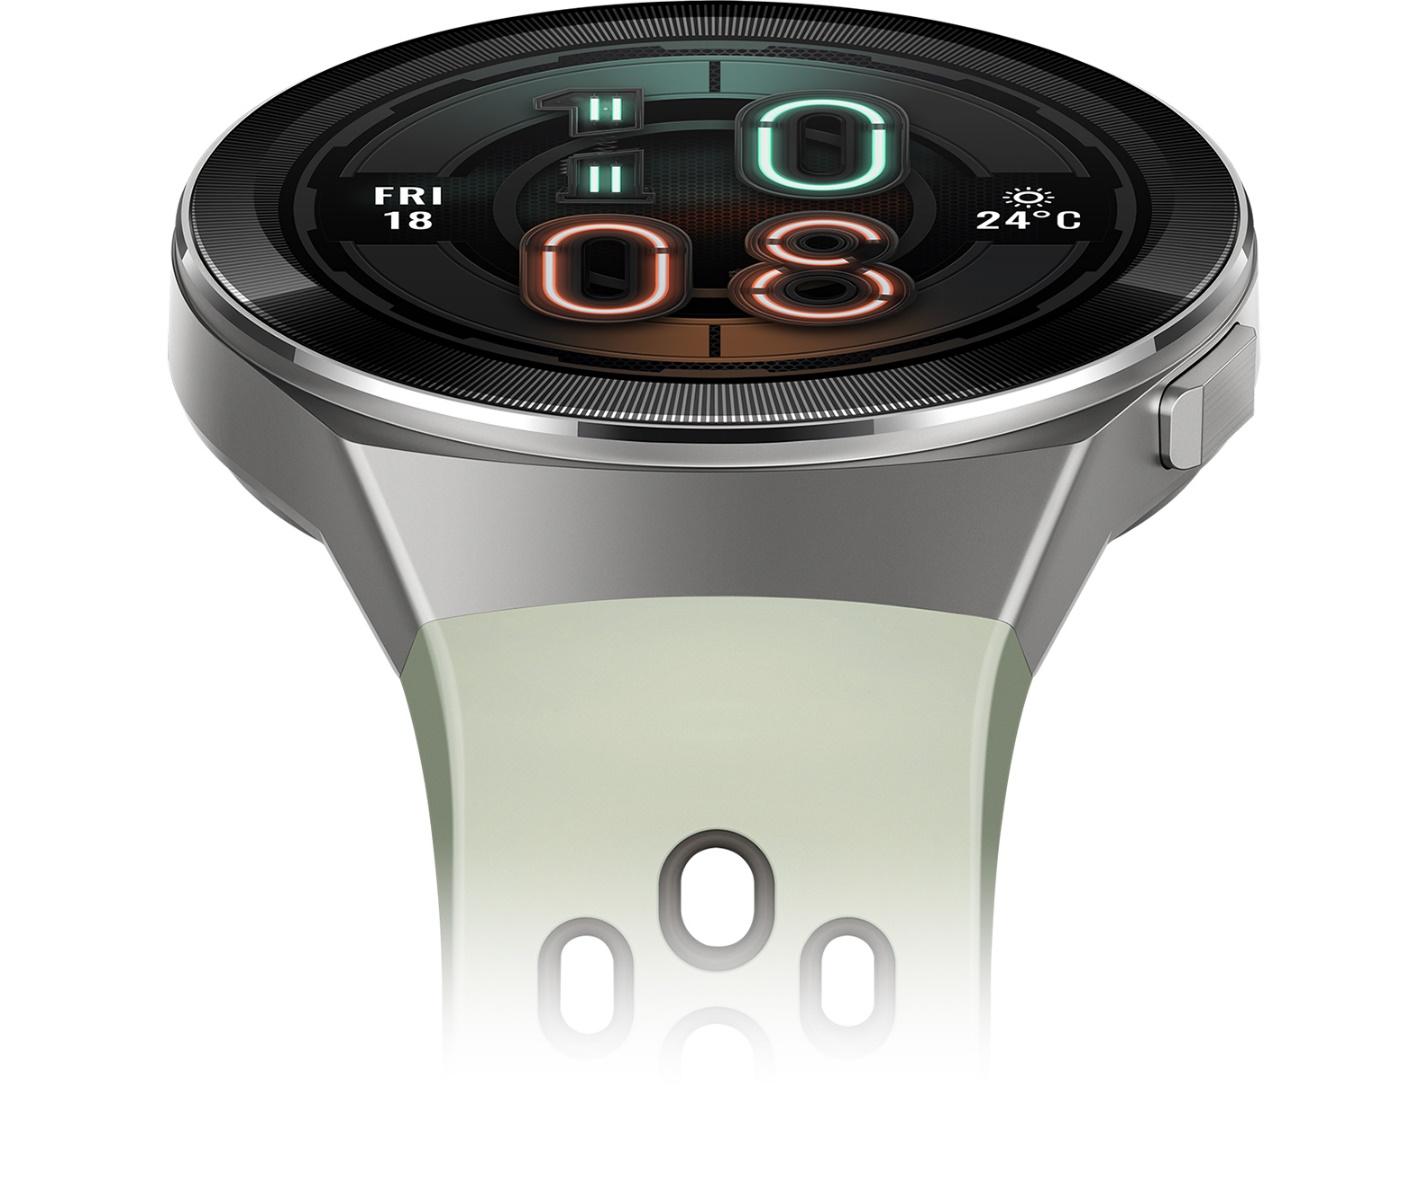 https://consumer.huawei.com/content/dam/huawei-cbg-site/common/mkt/pdp/wearables/watch-gt-2e/img/pc/2x/huawei-watch-gt-2e-pc-design@2x.jpg